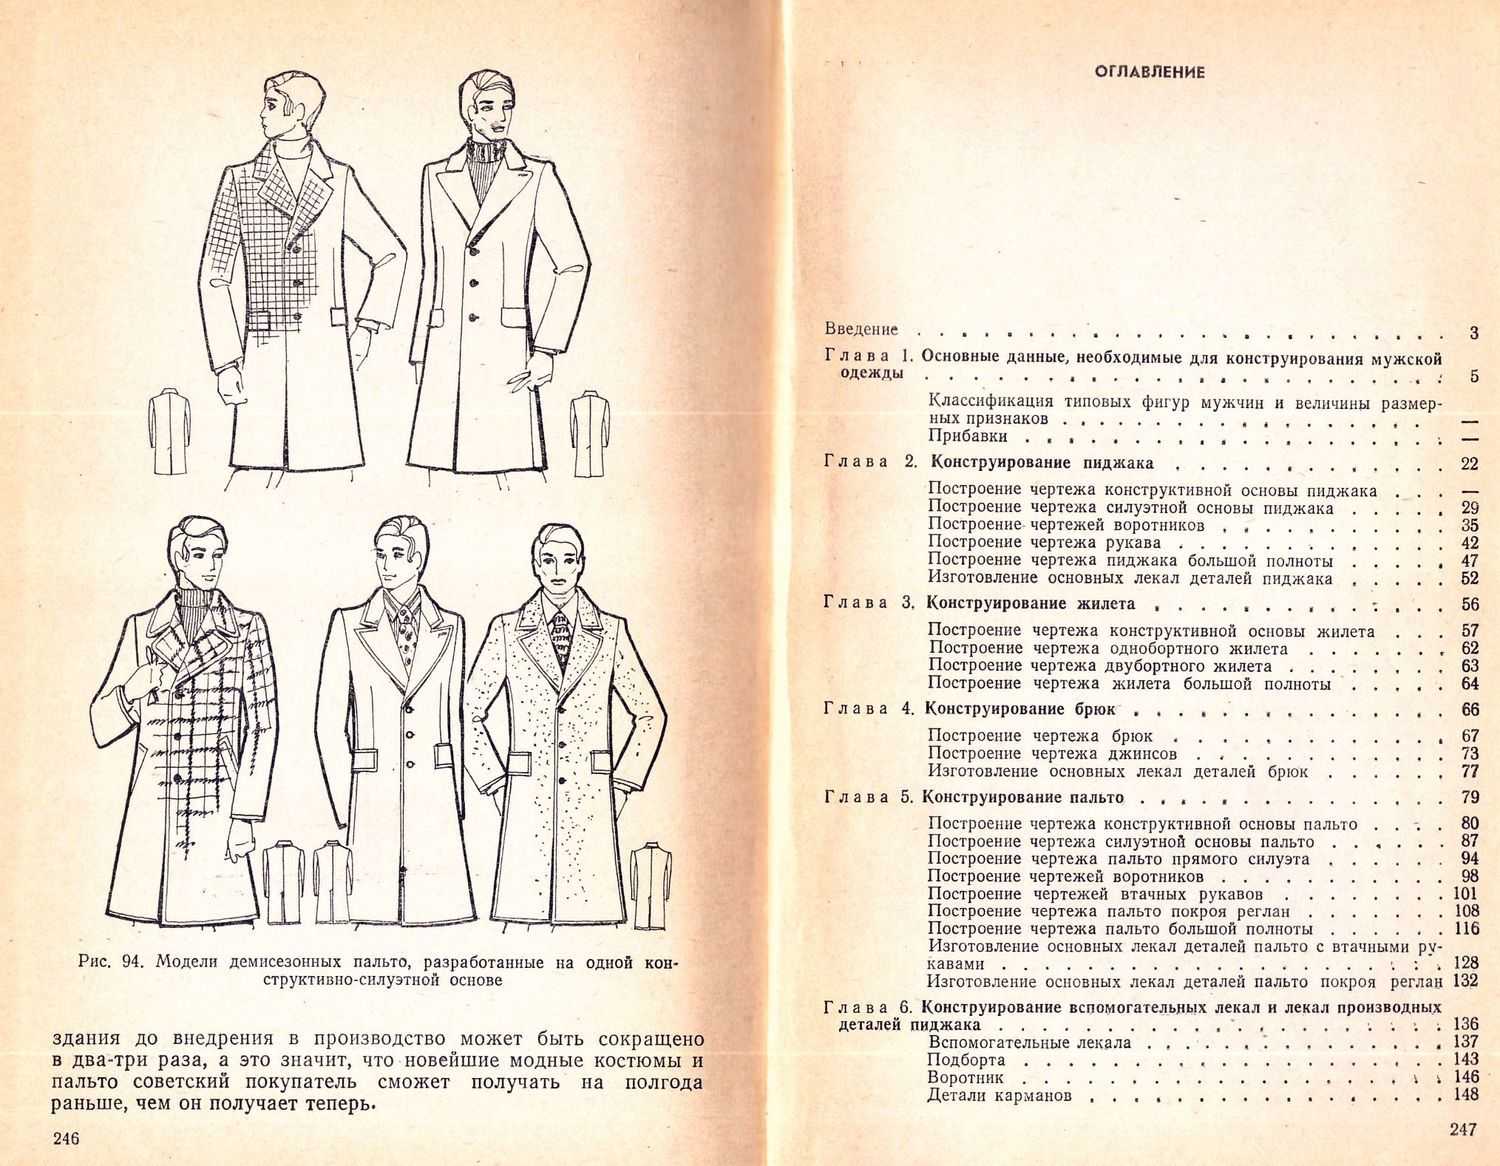 Как сшить пальто своими руками? 6 мастер-классов по пошиву пальто и созданию выкройки для начинающих